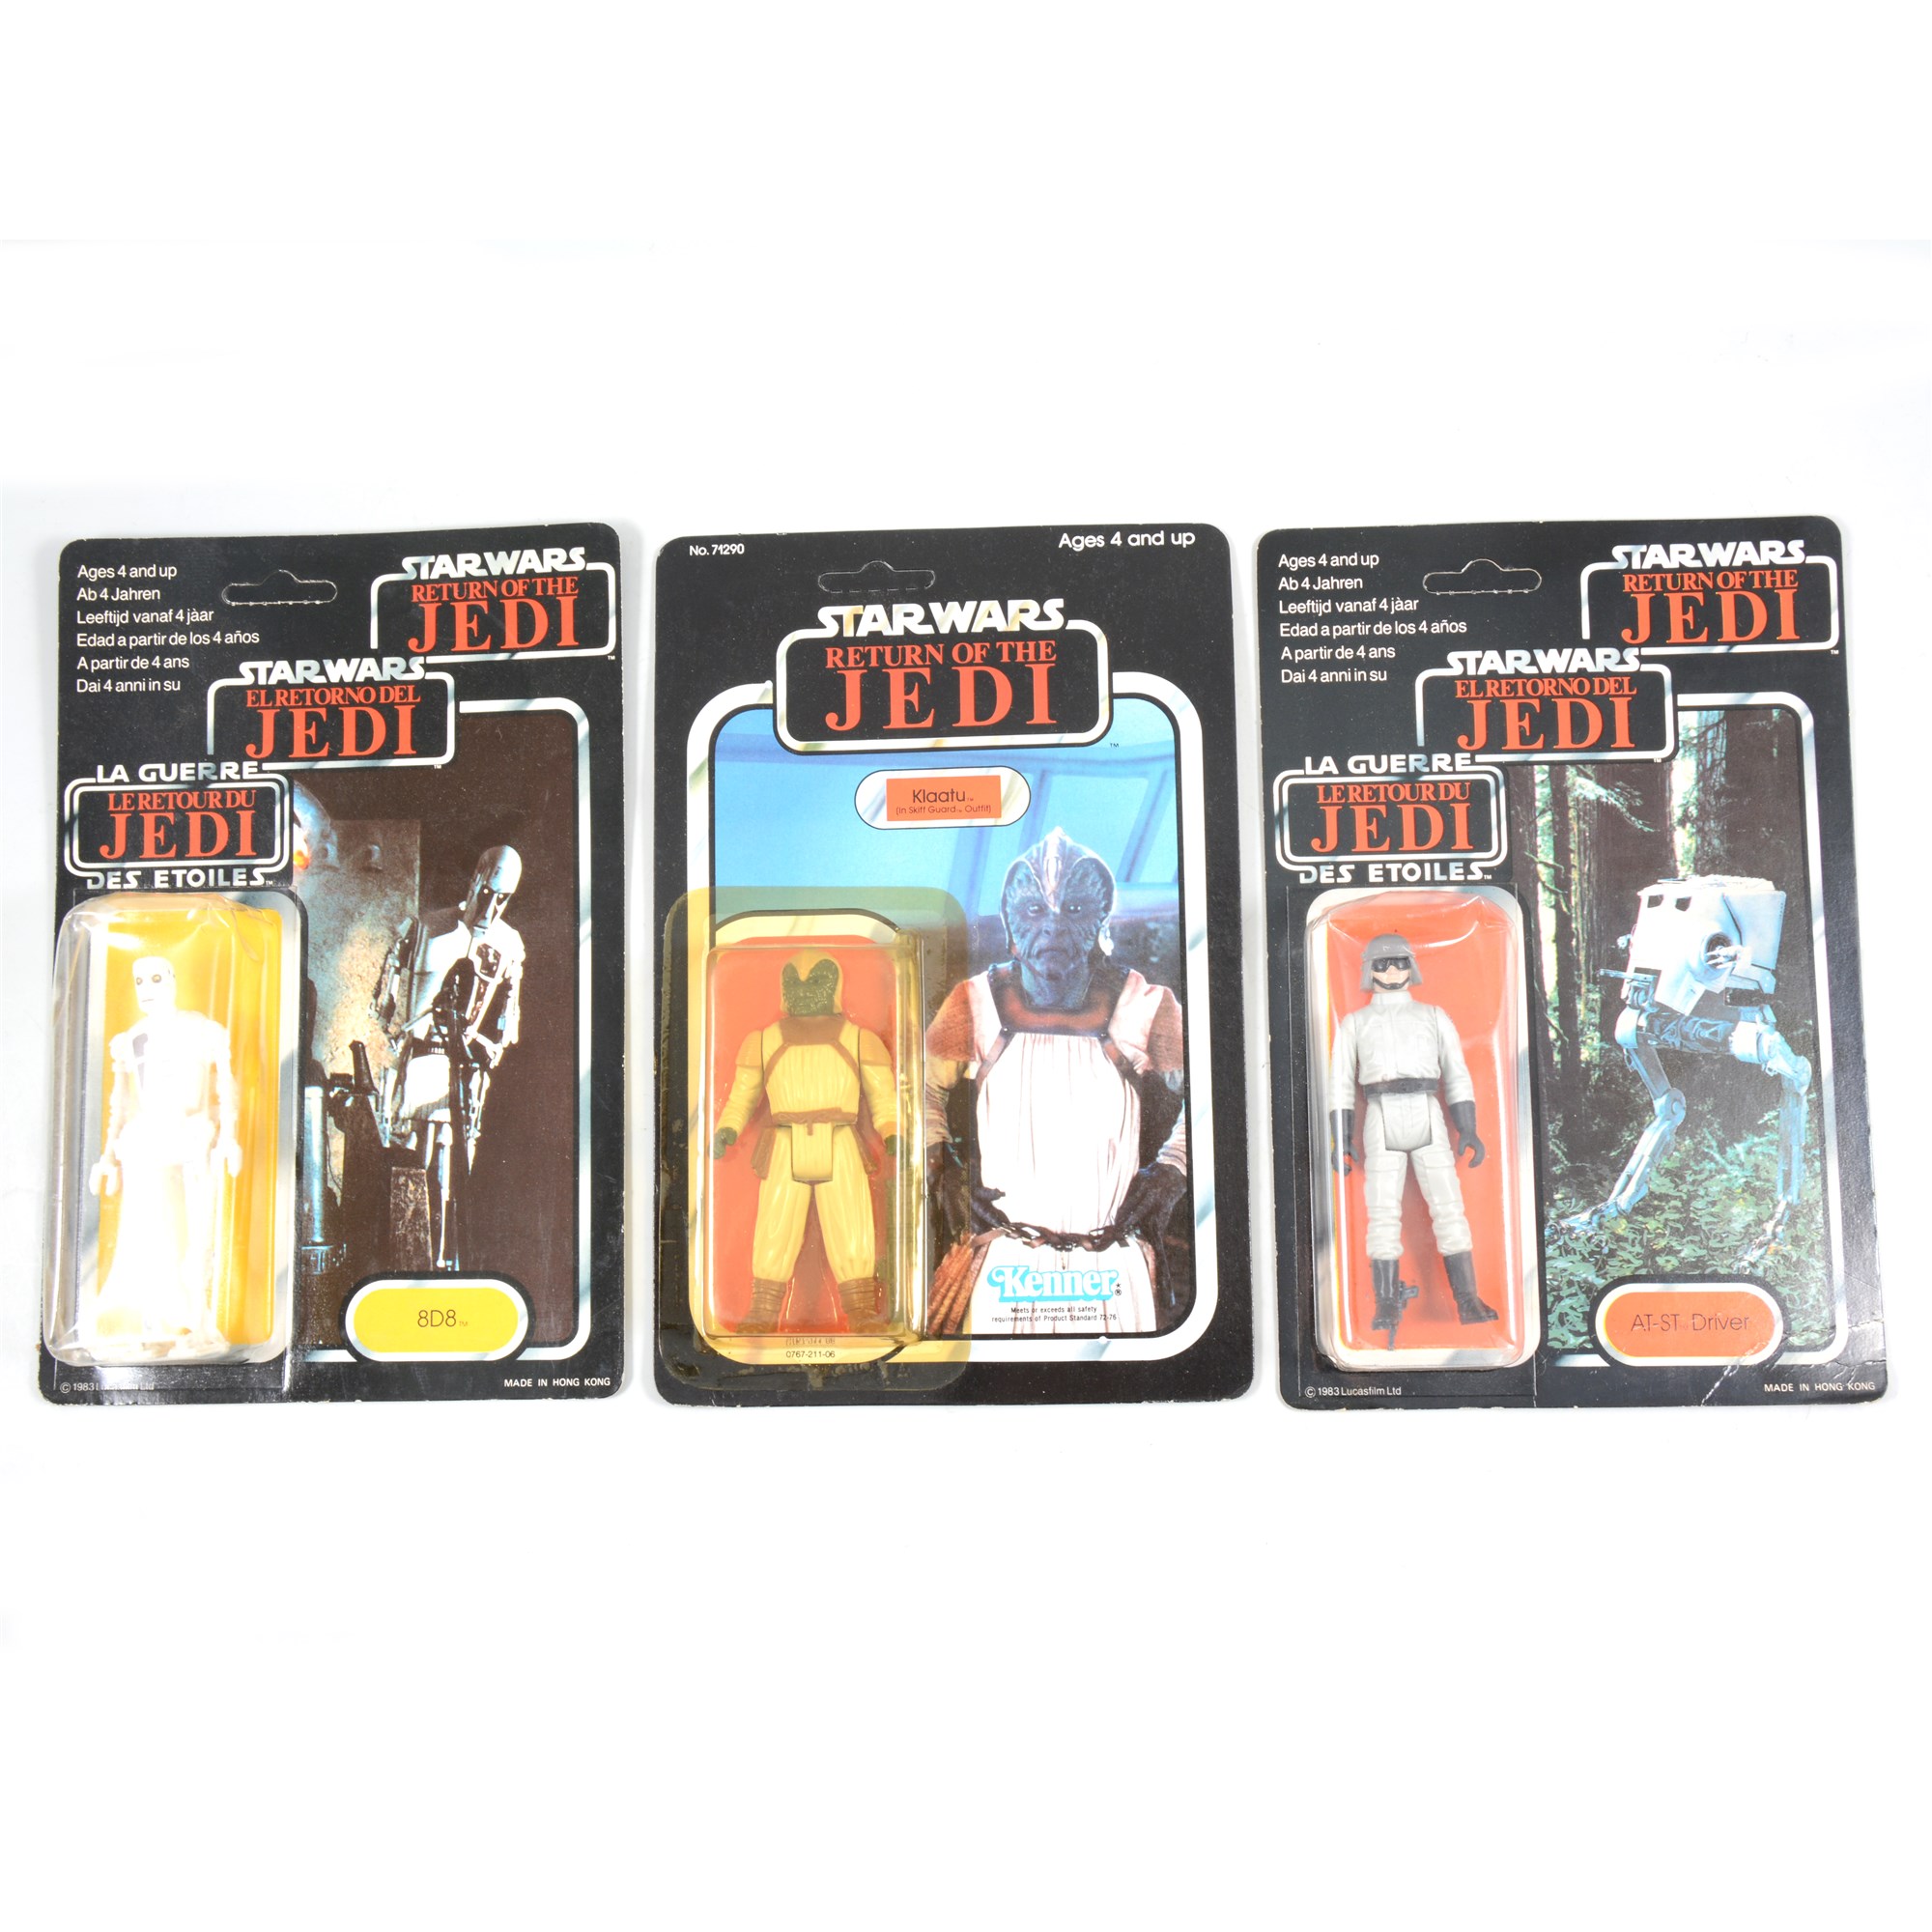 Three Star Wars figures, Klaatu (in Skiff Guard outfit), 8D8 droid, AT-ST Driver,